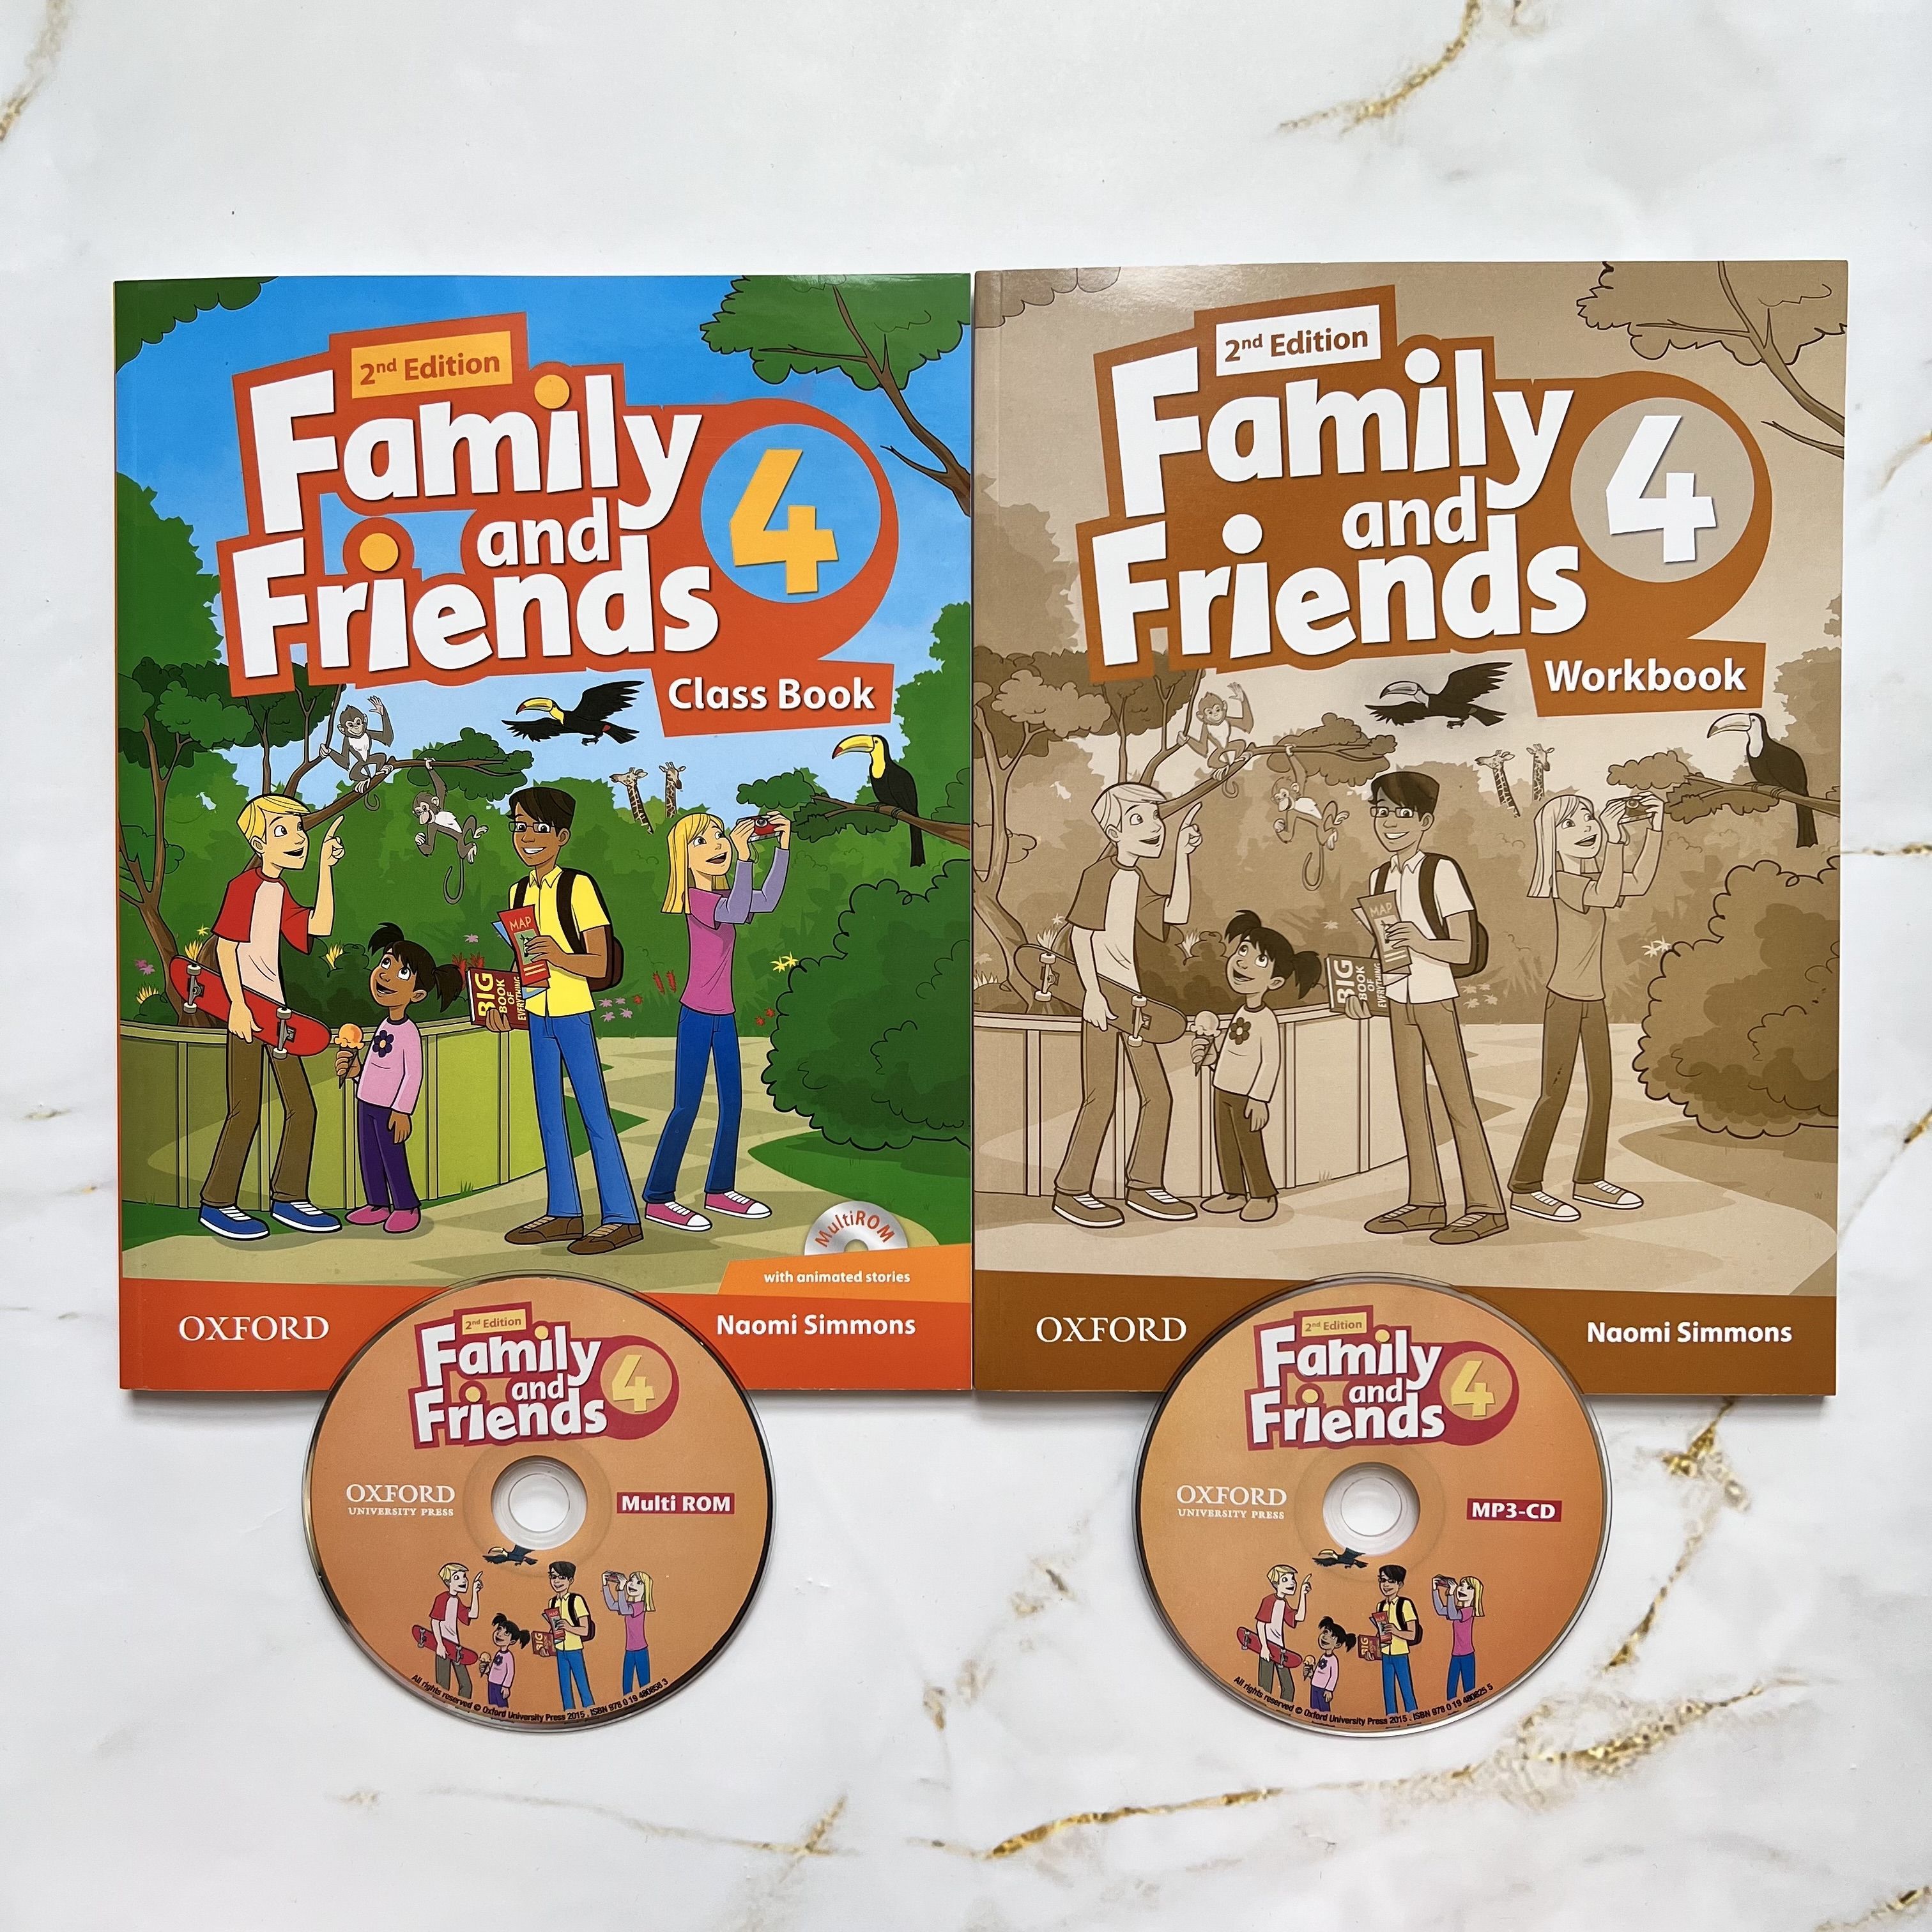 Фэмили энд френдс 4 тетрадь. Family and friends second Edition. Учебник Oxford Family and friends 4. First friends 1 second Edition алфавит.